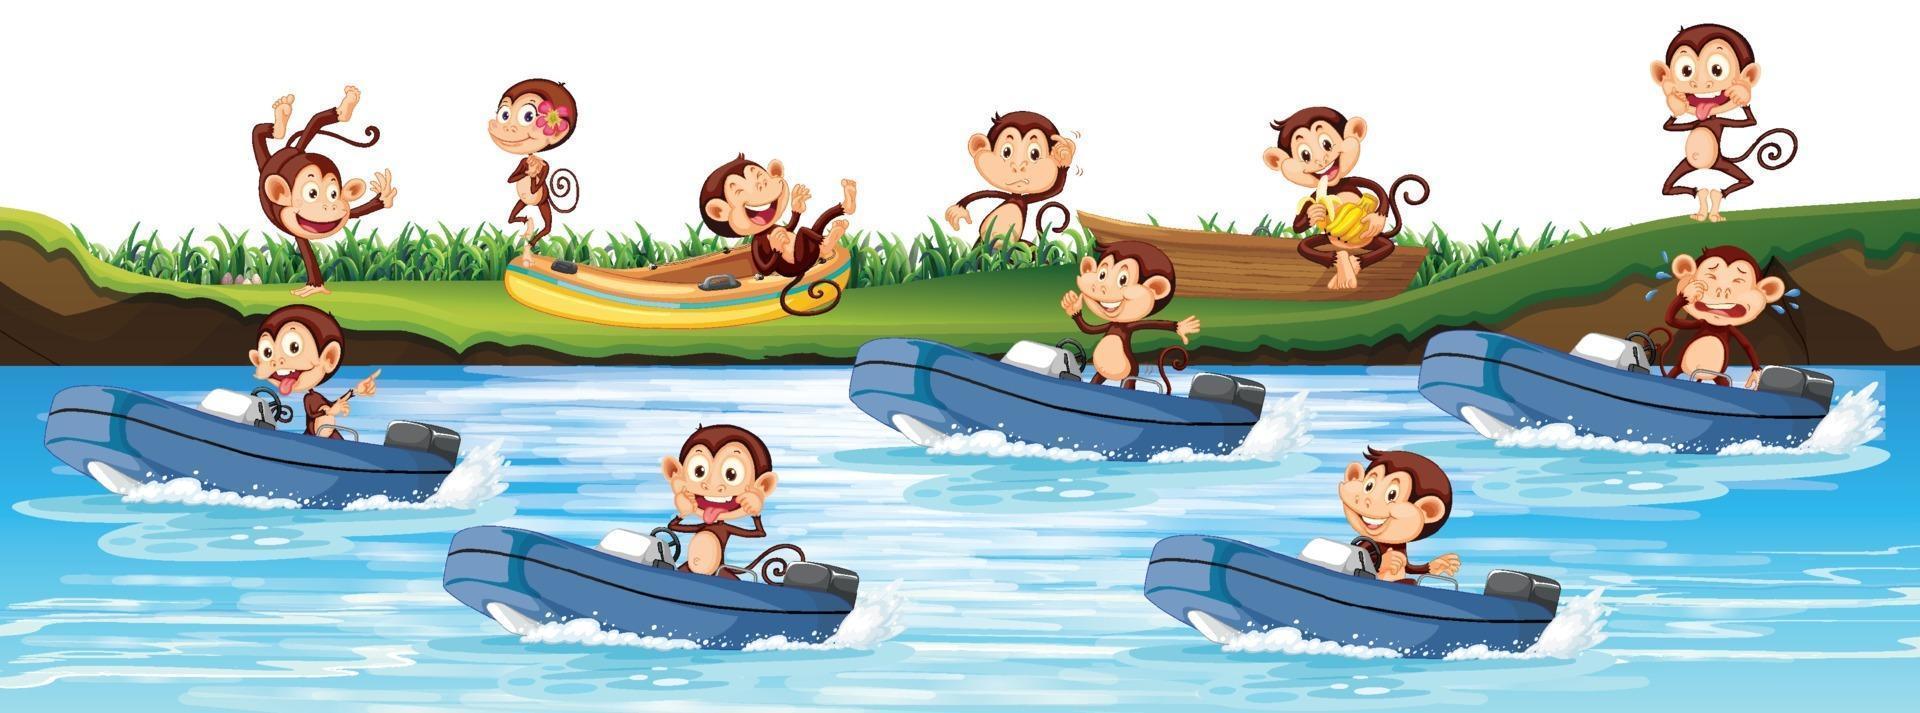 un sacco di scimmie in barca a motore nel fiume vettore